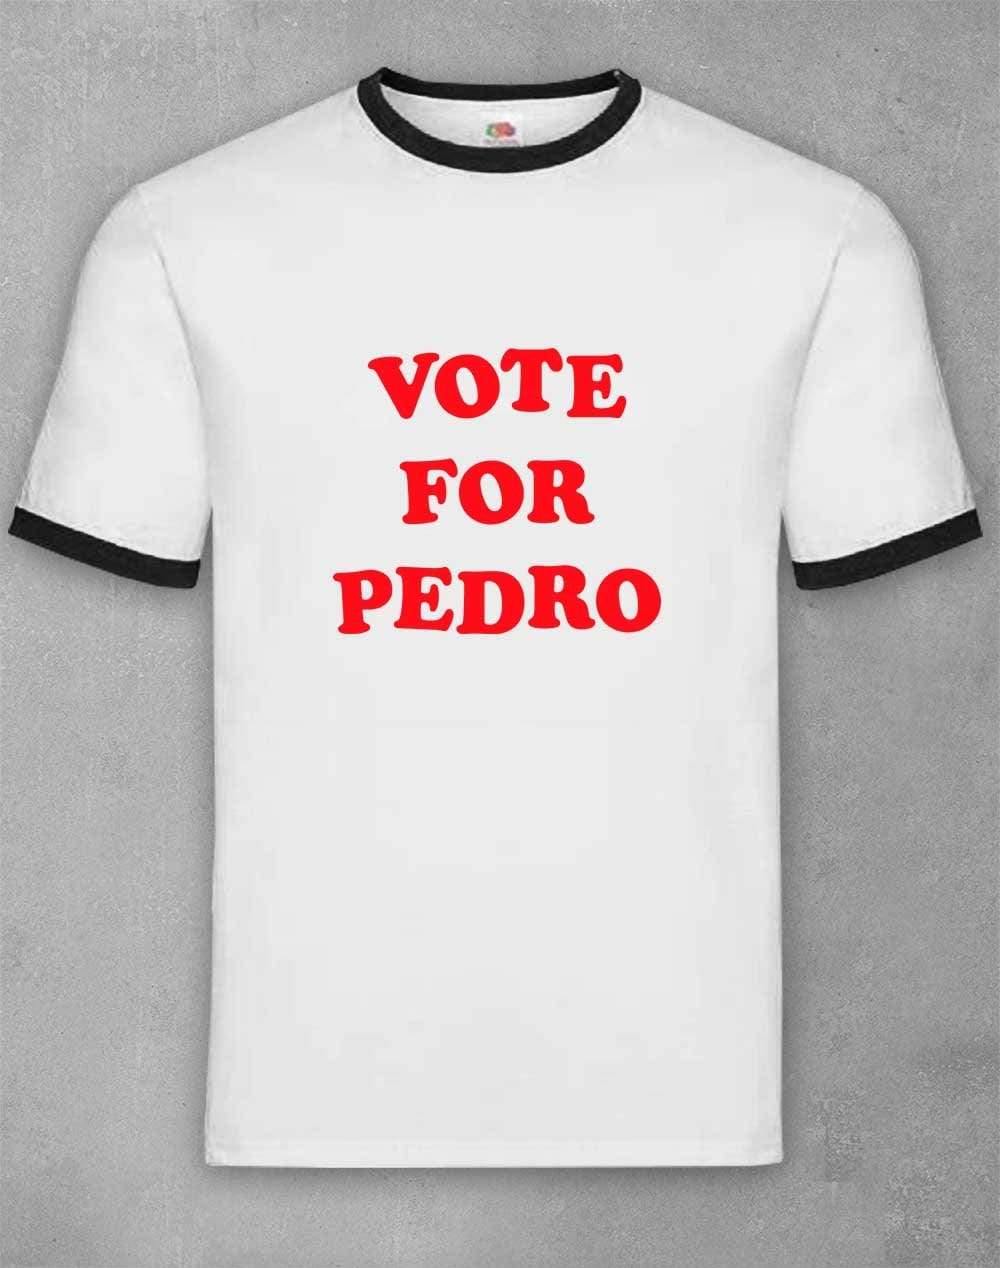 Vote for Pedro T-Shirt S / White & Black Ringer  - Off World Tees